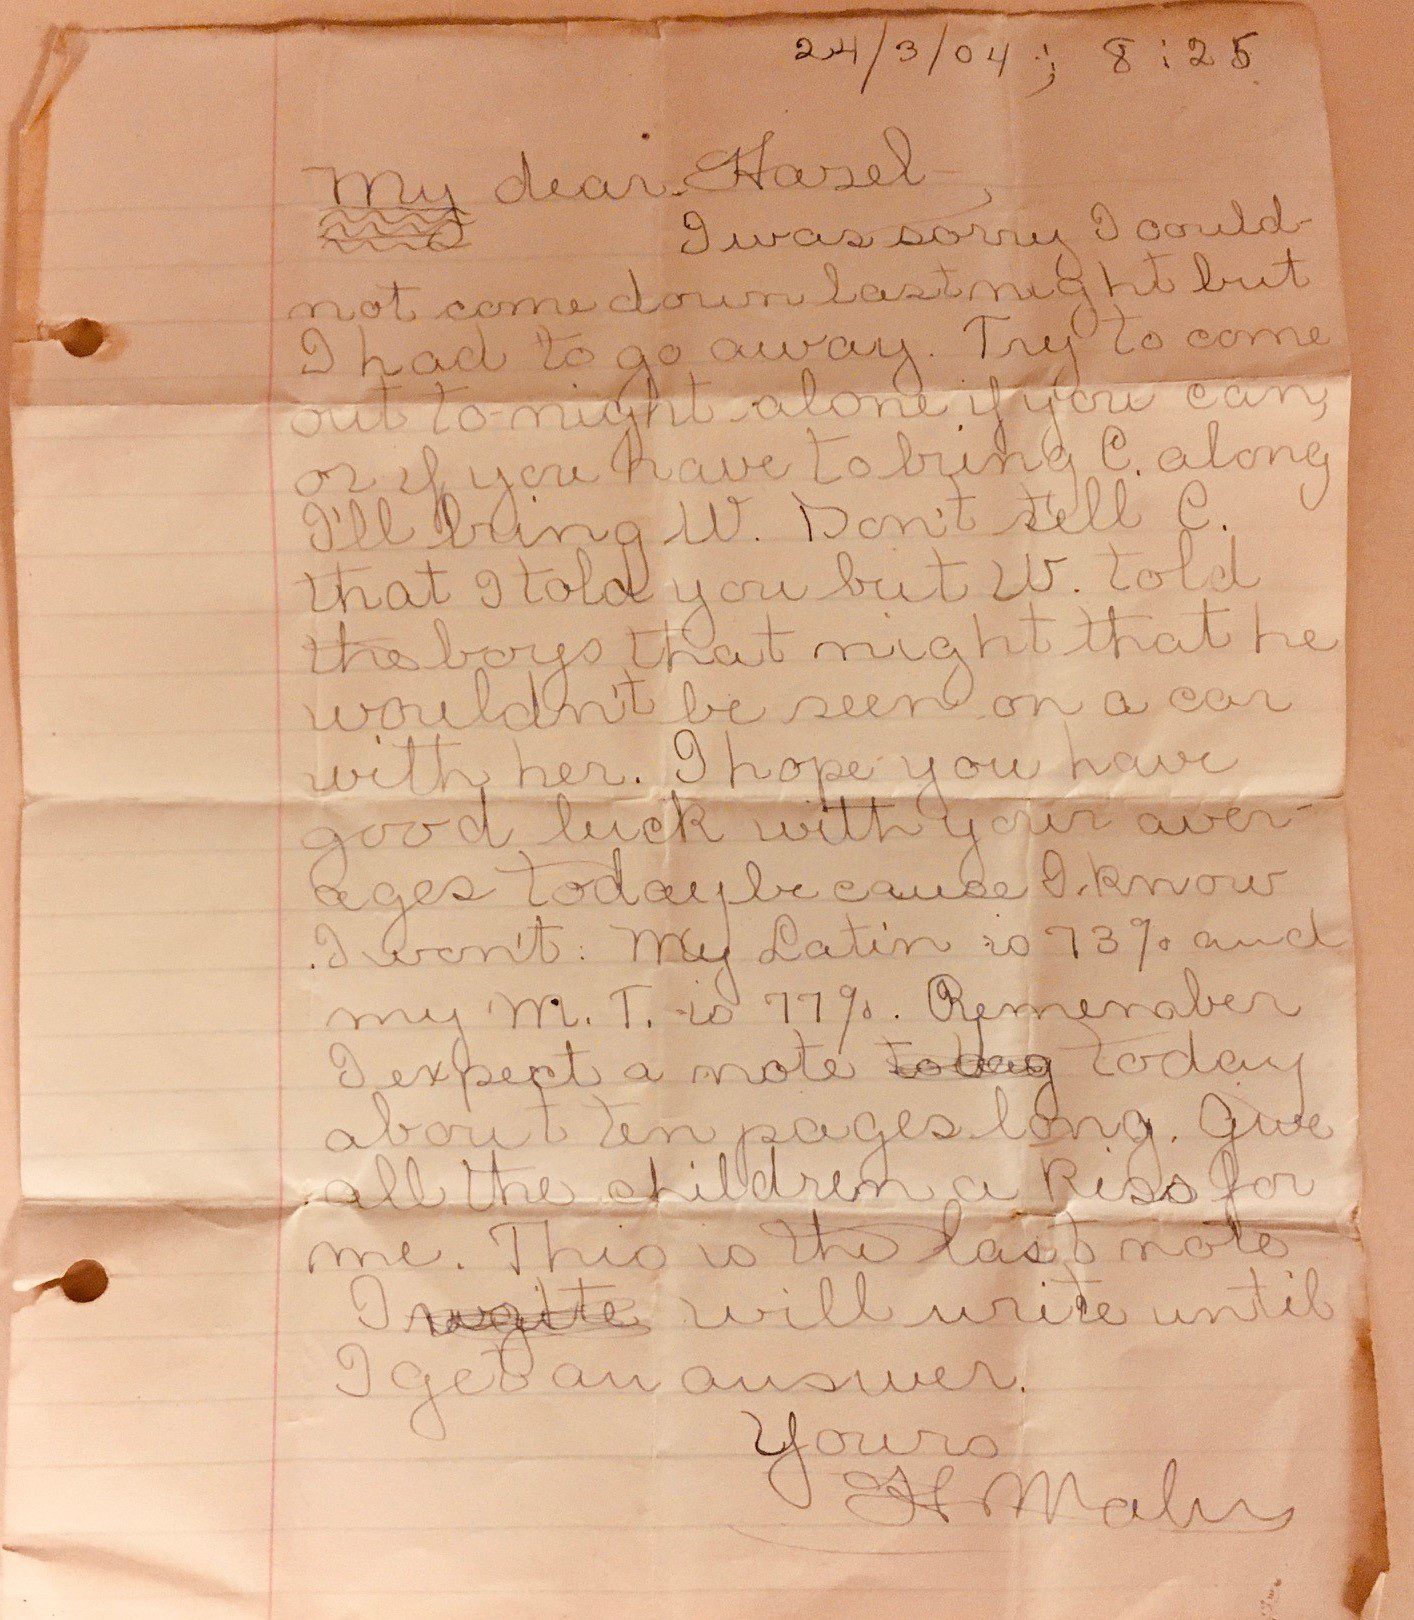 Letter written to Hazel Hull from a friend in 1904